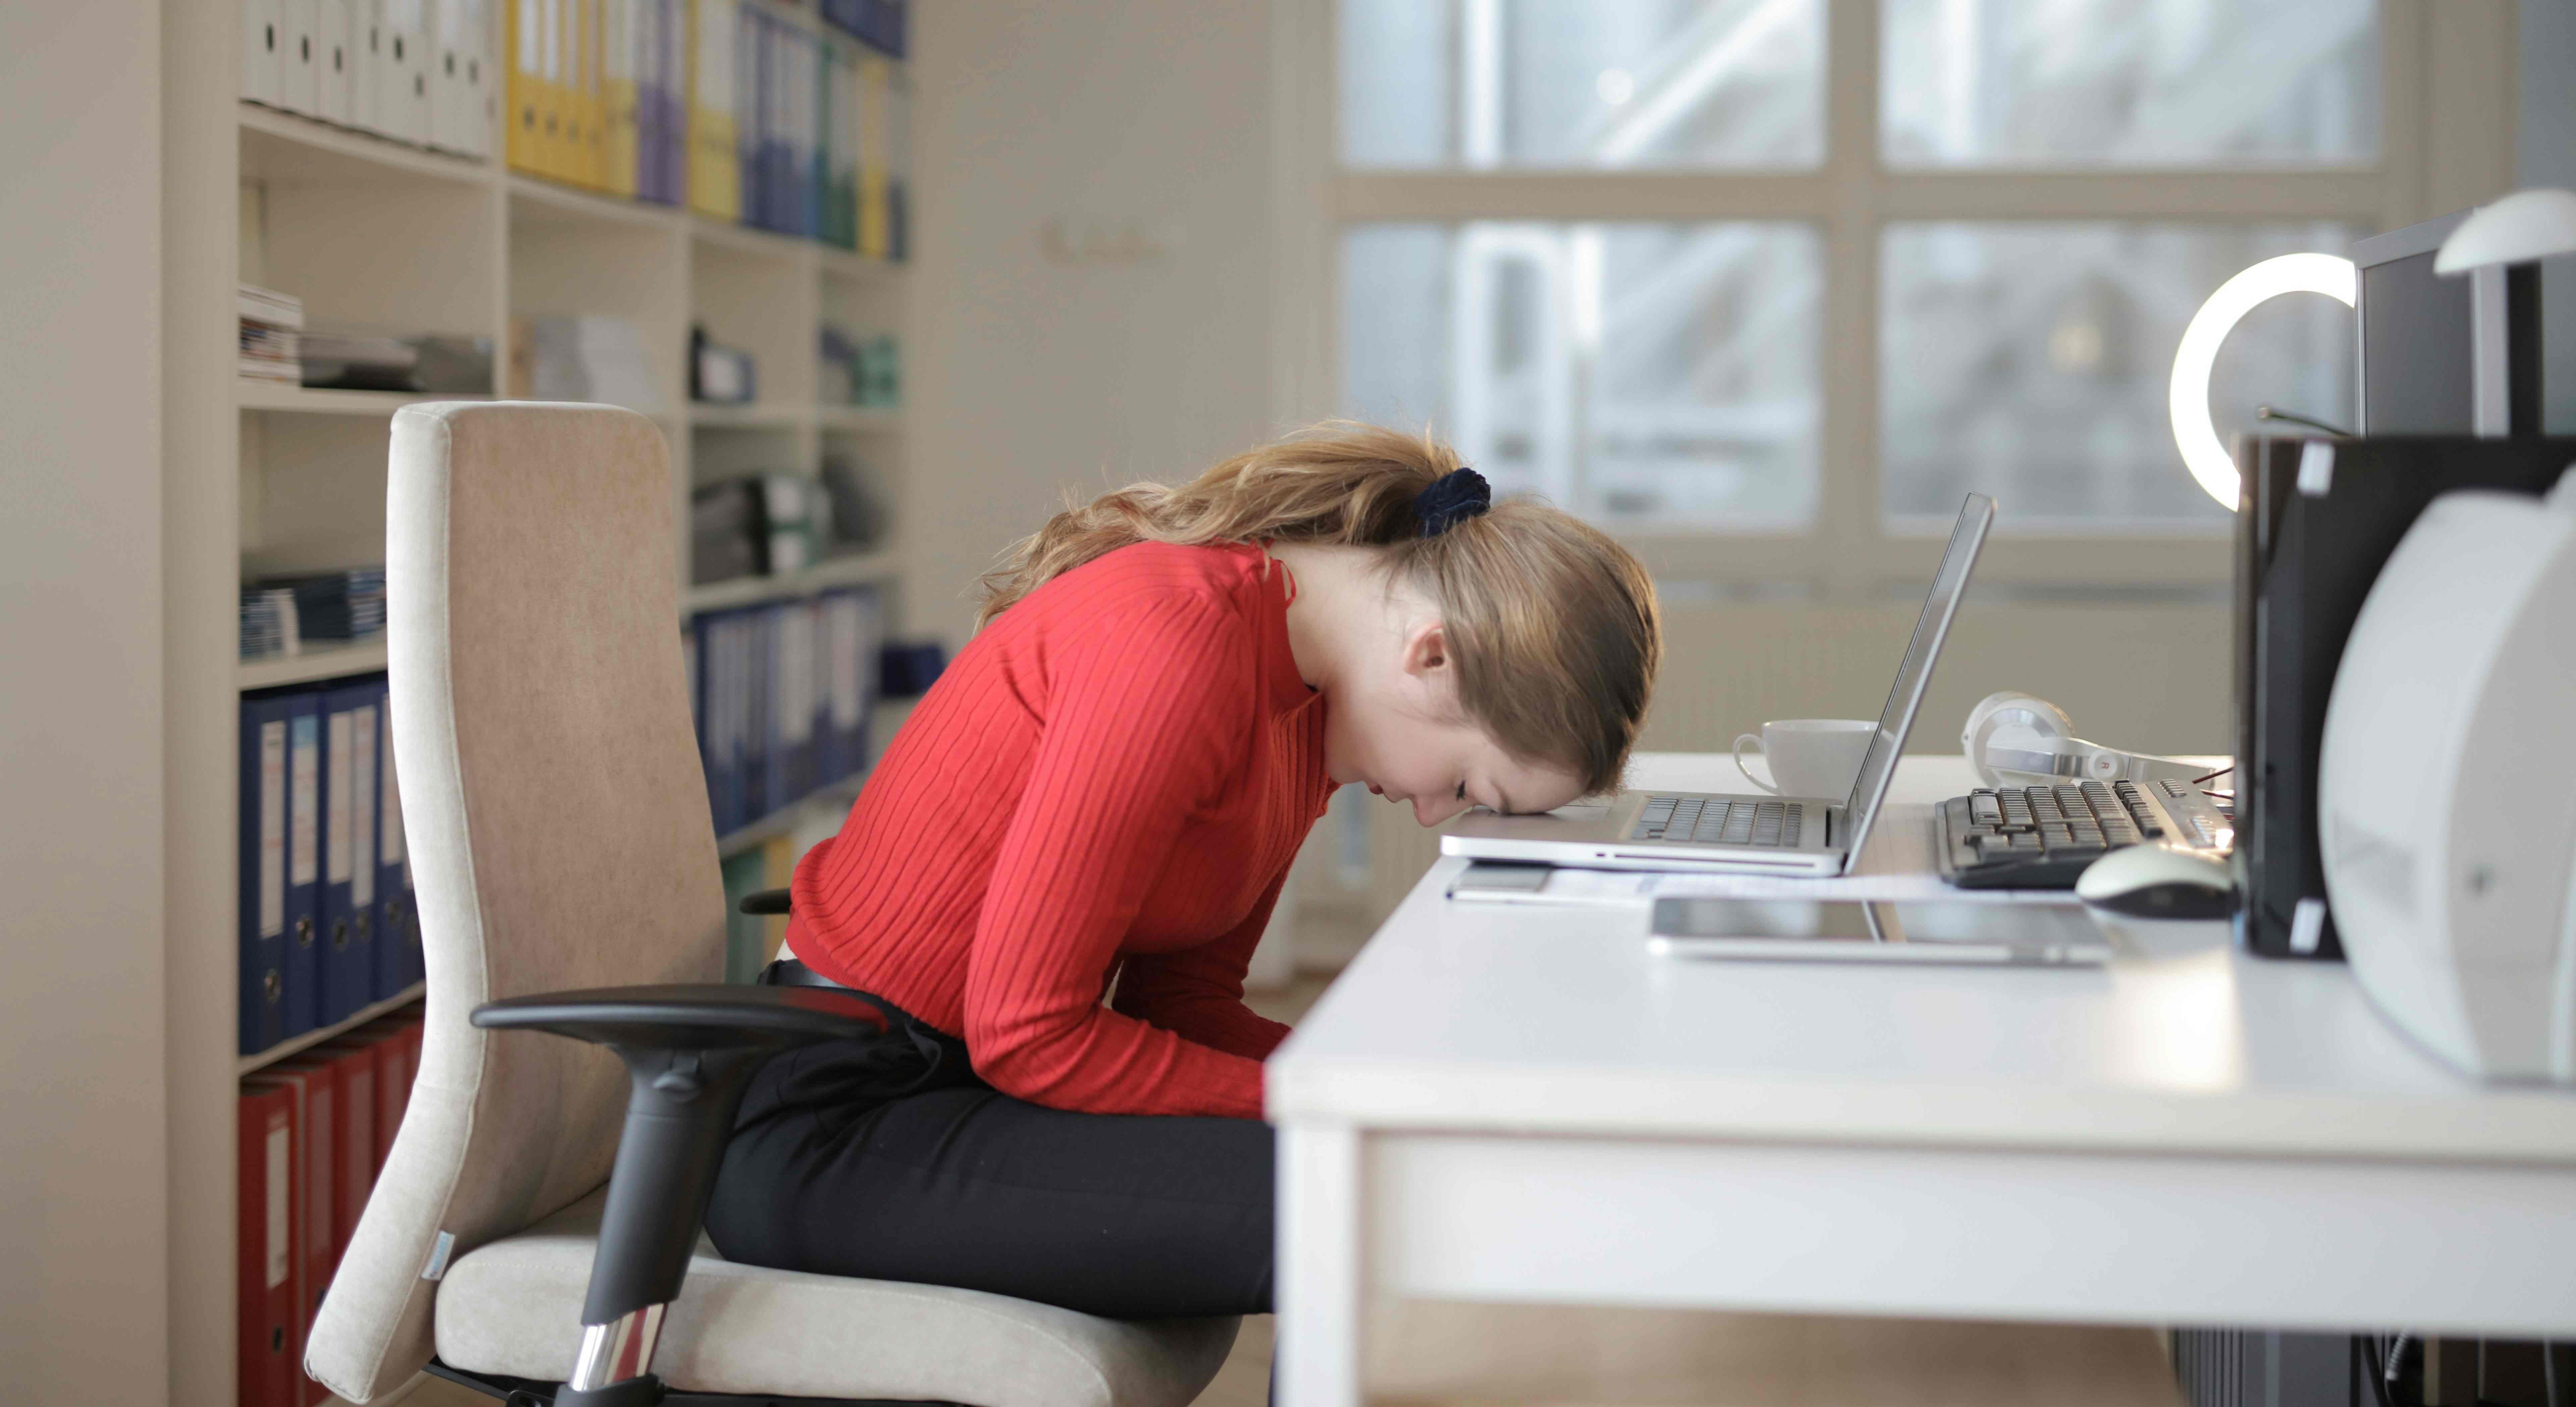 Žena v kanceláři sedí unavená na židli, přičemž má hlavu opřenou o notebook položený na stole.